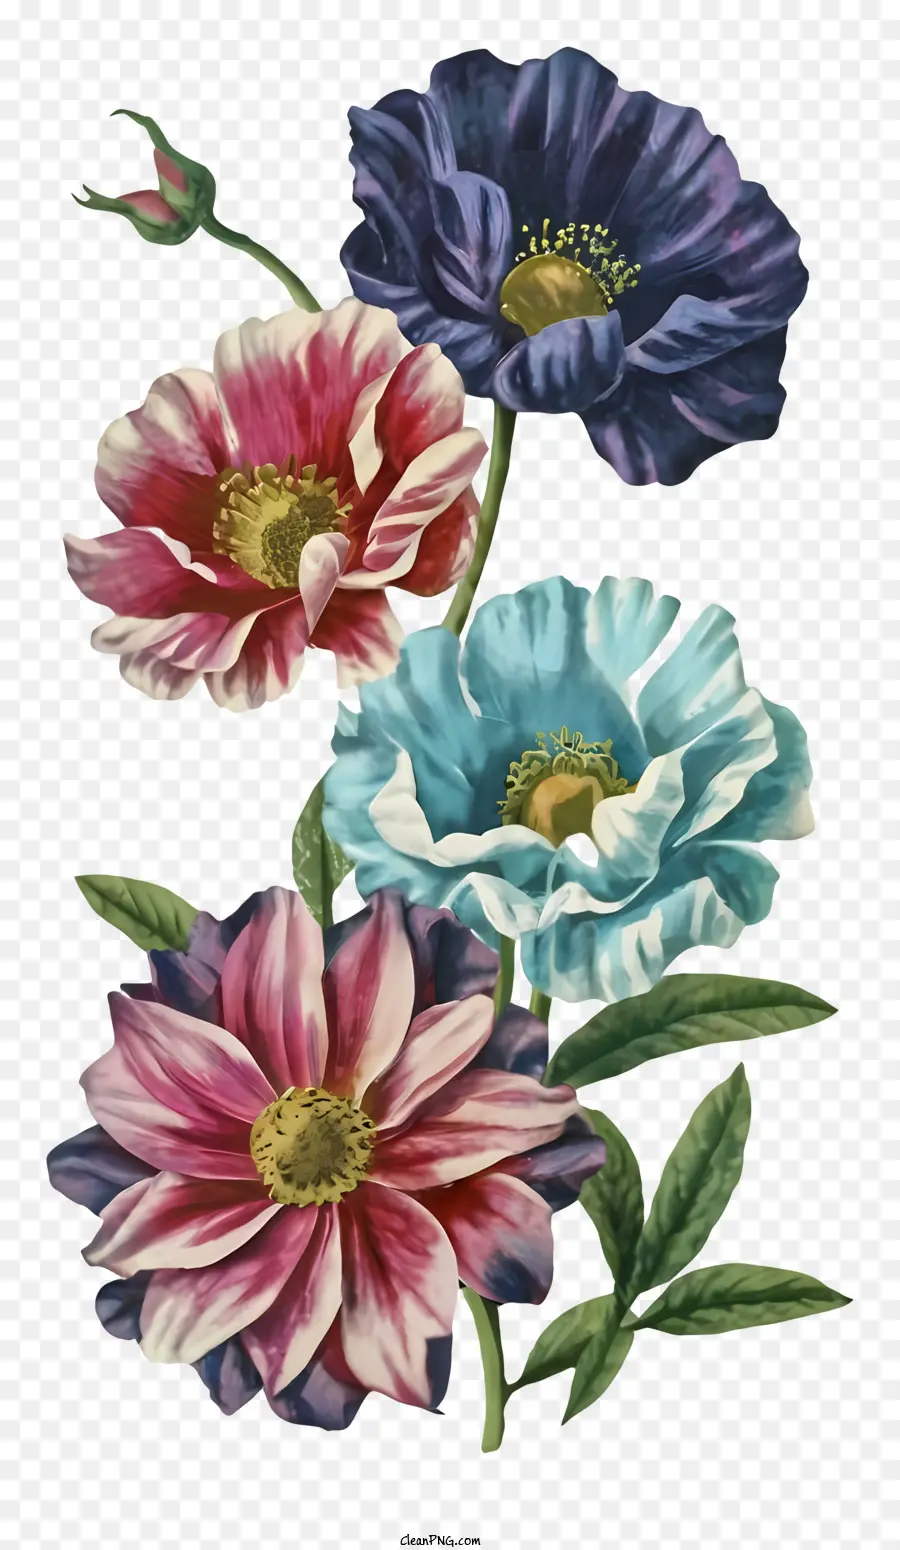 Blumenfarben blau rosa lebendig - Bunte Blumen, die vor einem schwarzen Hintergrund angeordnet sind